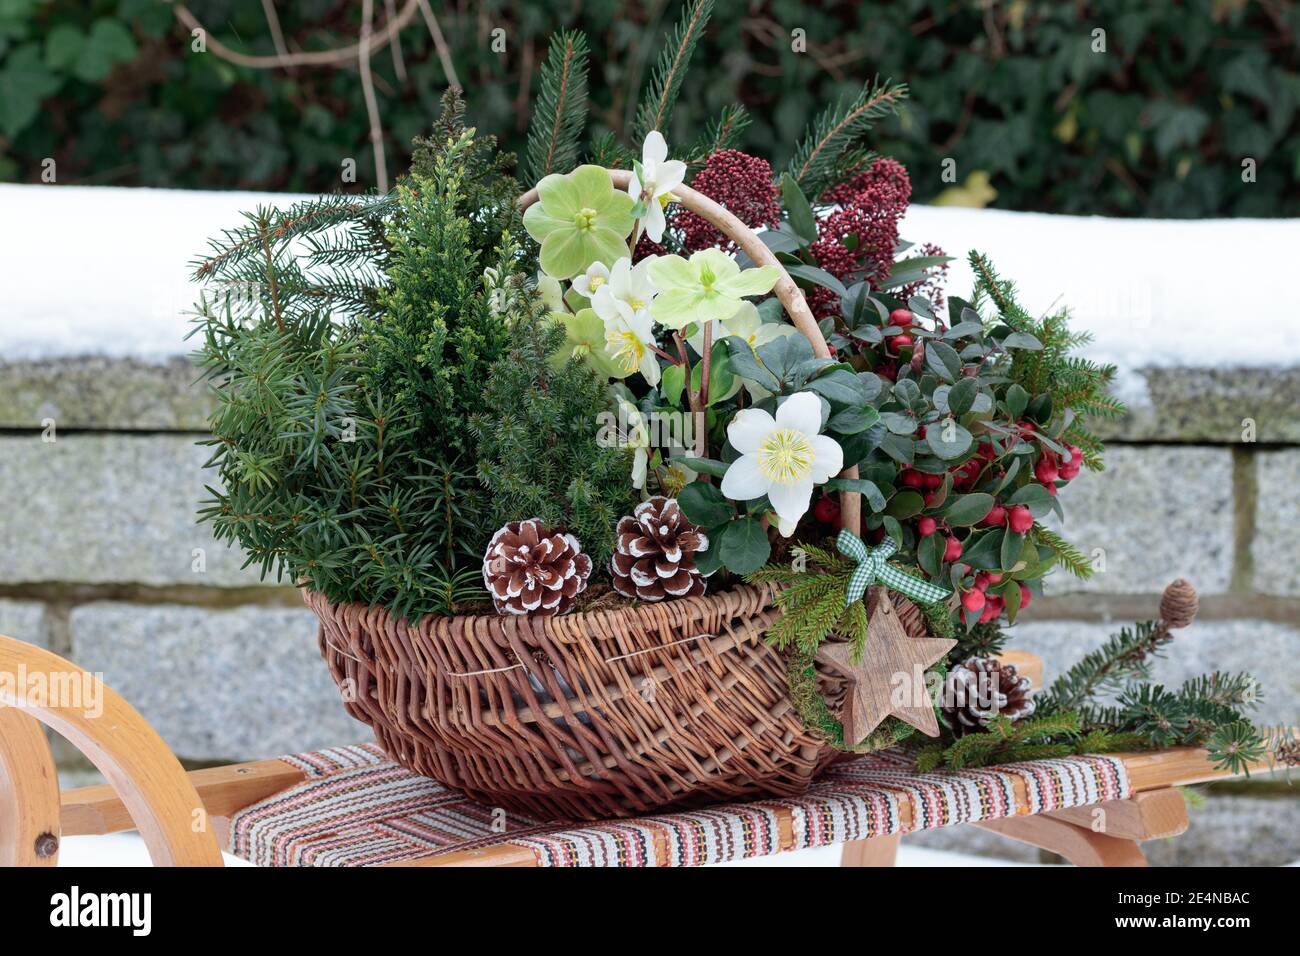 panier avec helleborus niger, conifères, gaulthériens et skimmia sur le traîneau dans le jardin d'hiver Banque D'Images